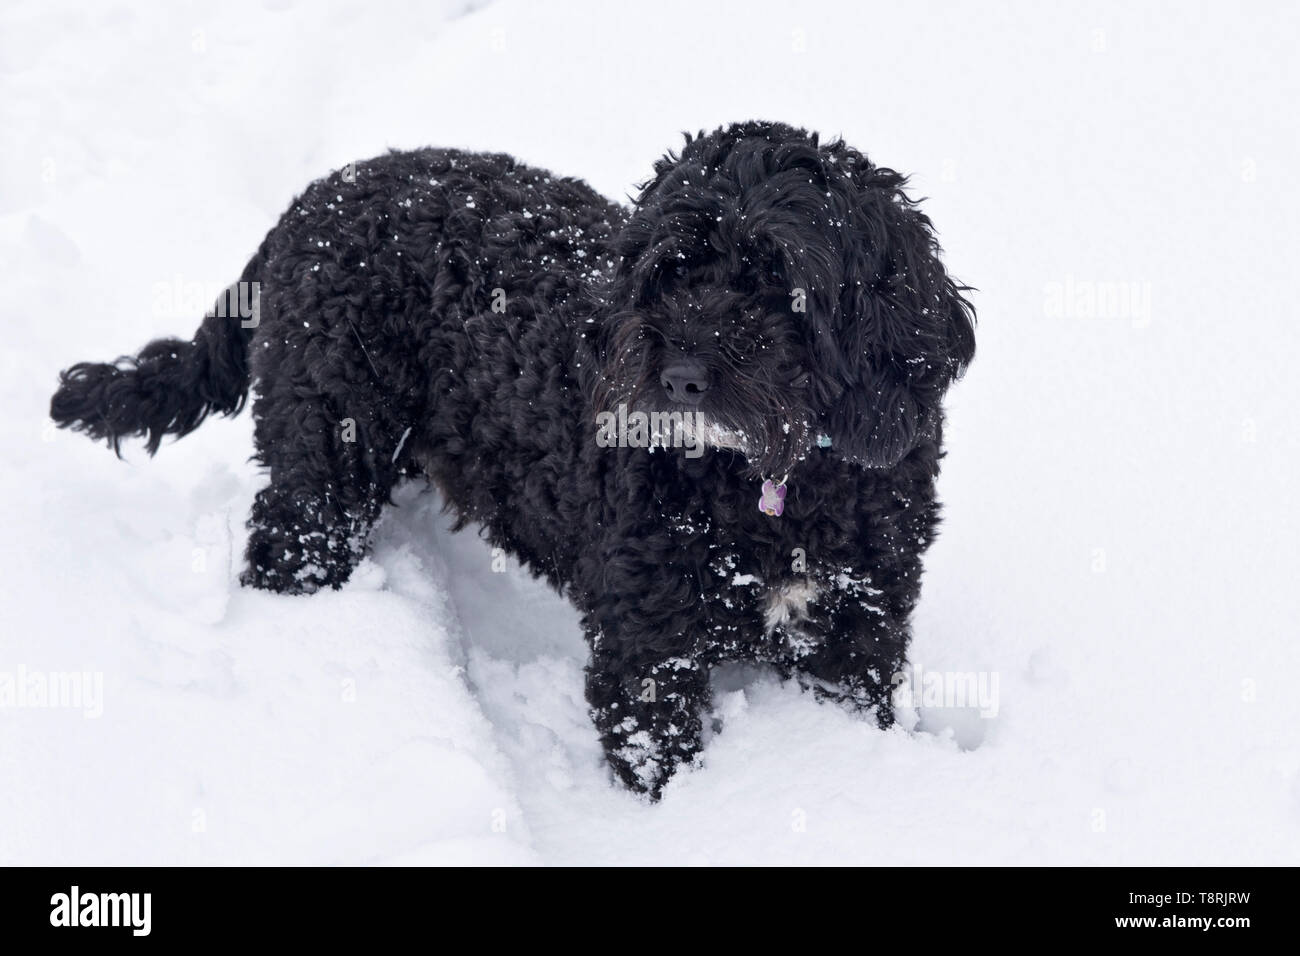 Un petit chien noir, cockerpoo, avec ses jambes enfouies profondément dans une nouvelle couche de neige blanche, Berkshire, Février Banque D'Images